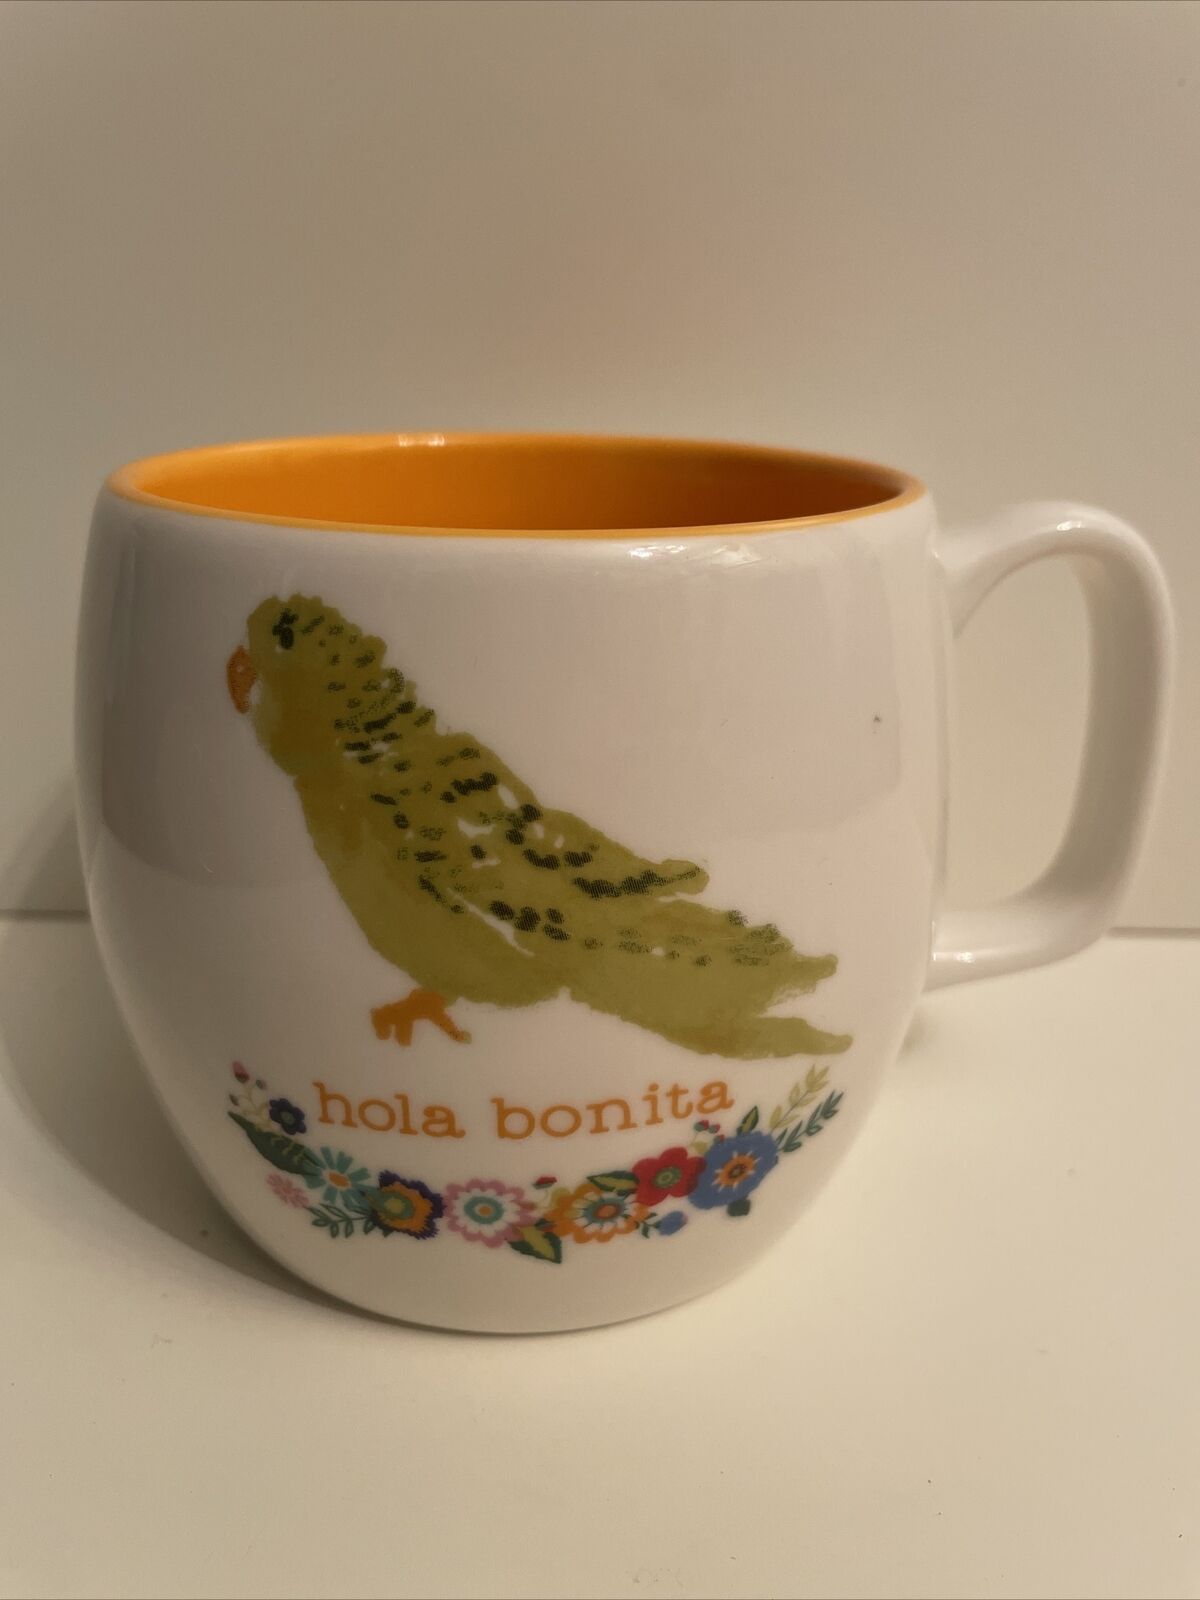 Opalhouse Hola Bonita Porcelain Mug